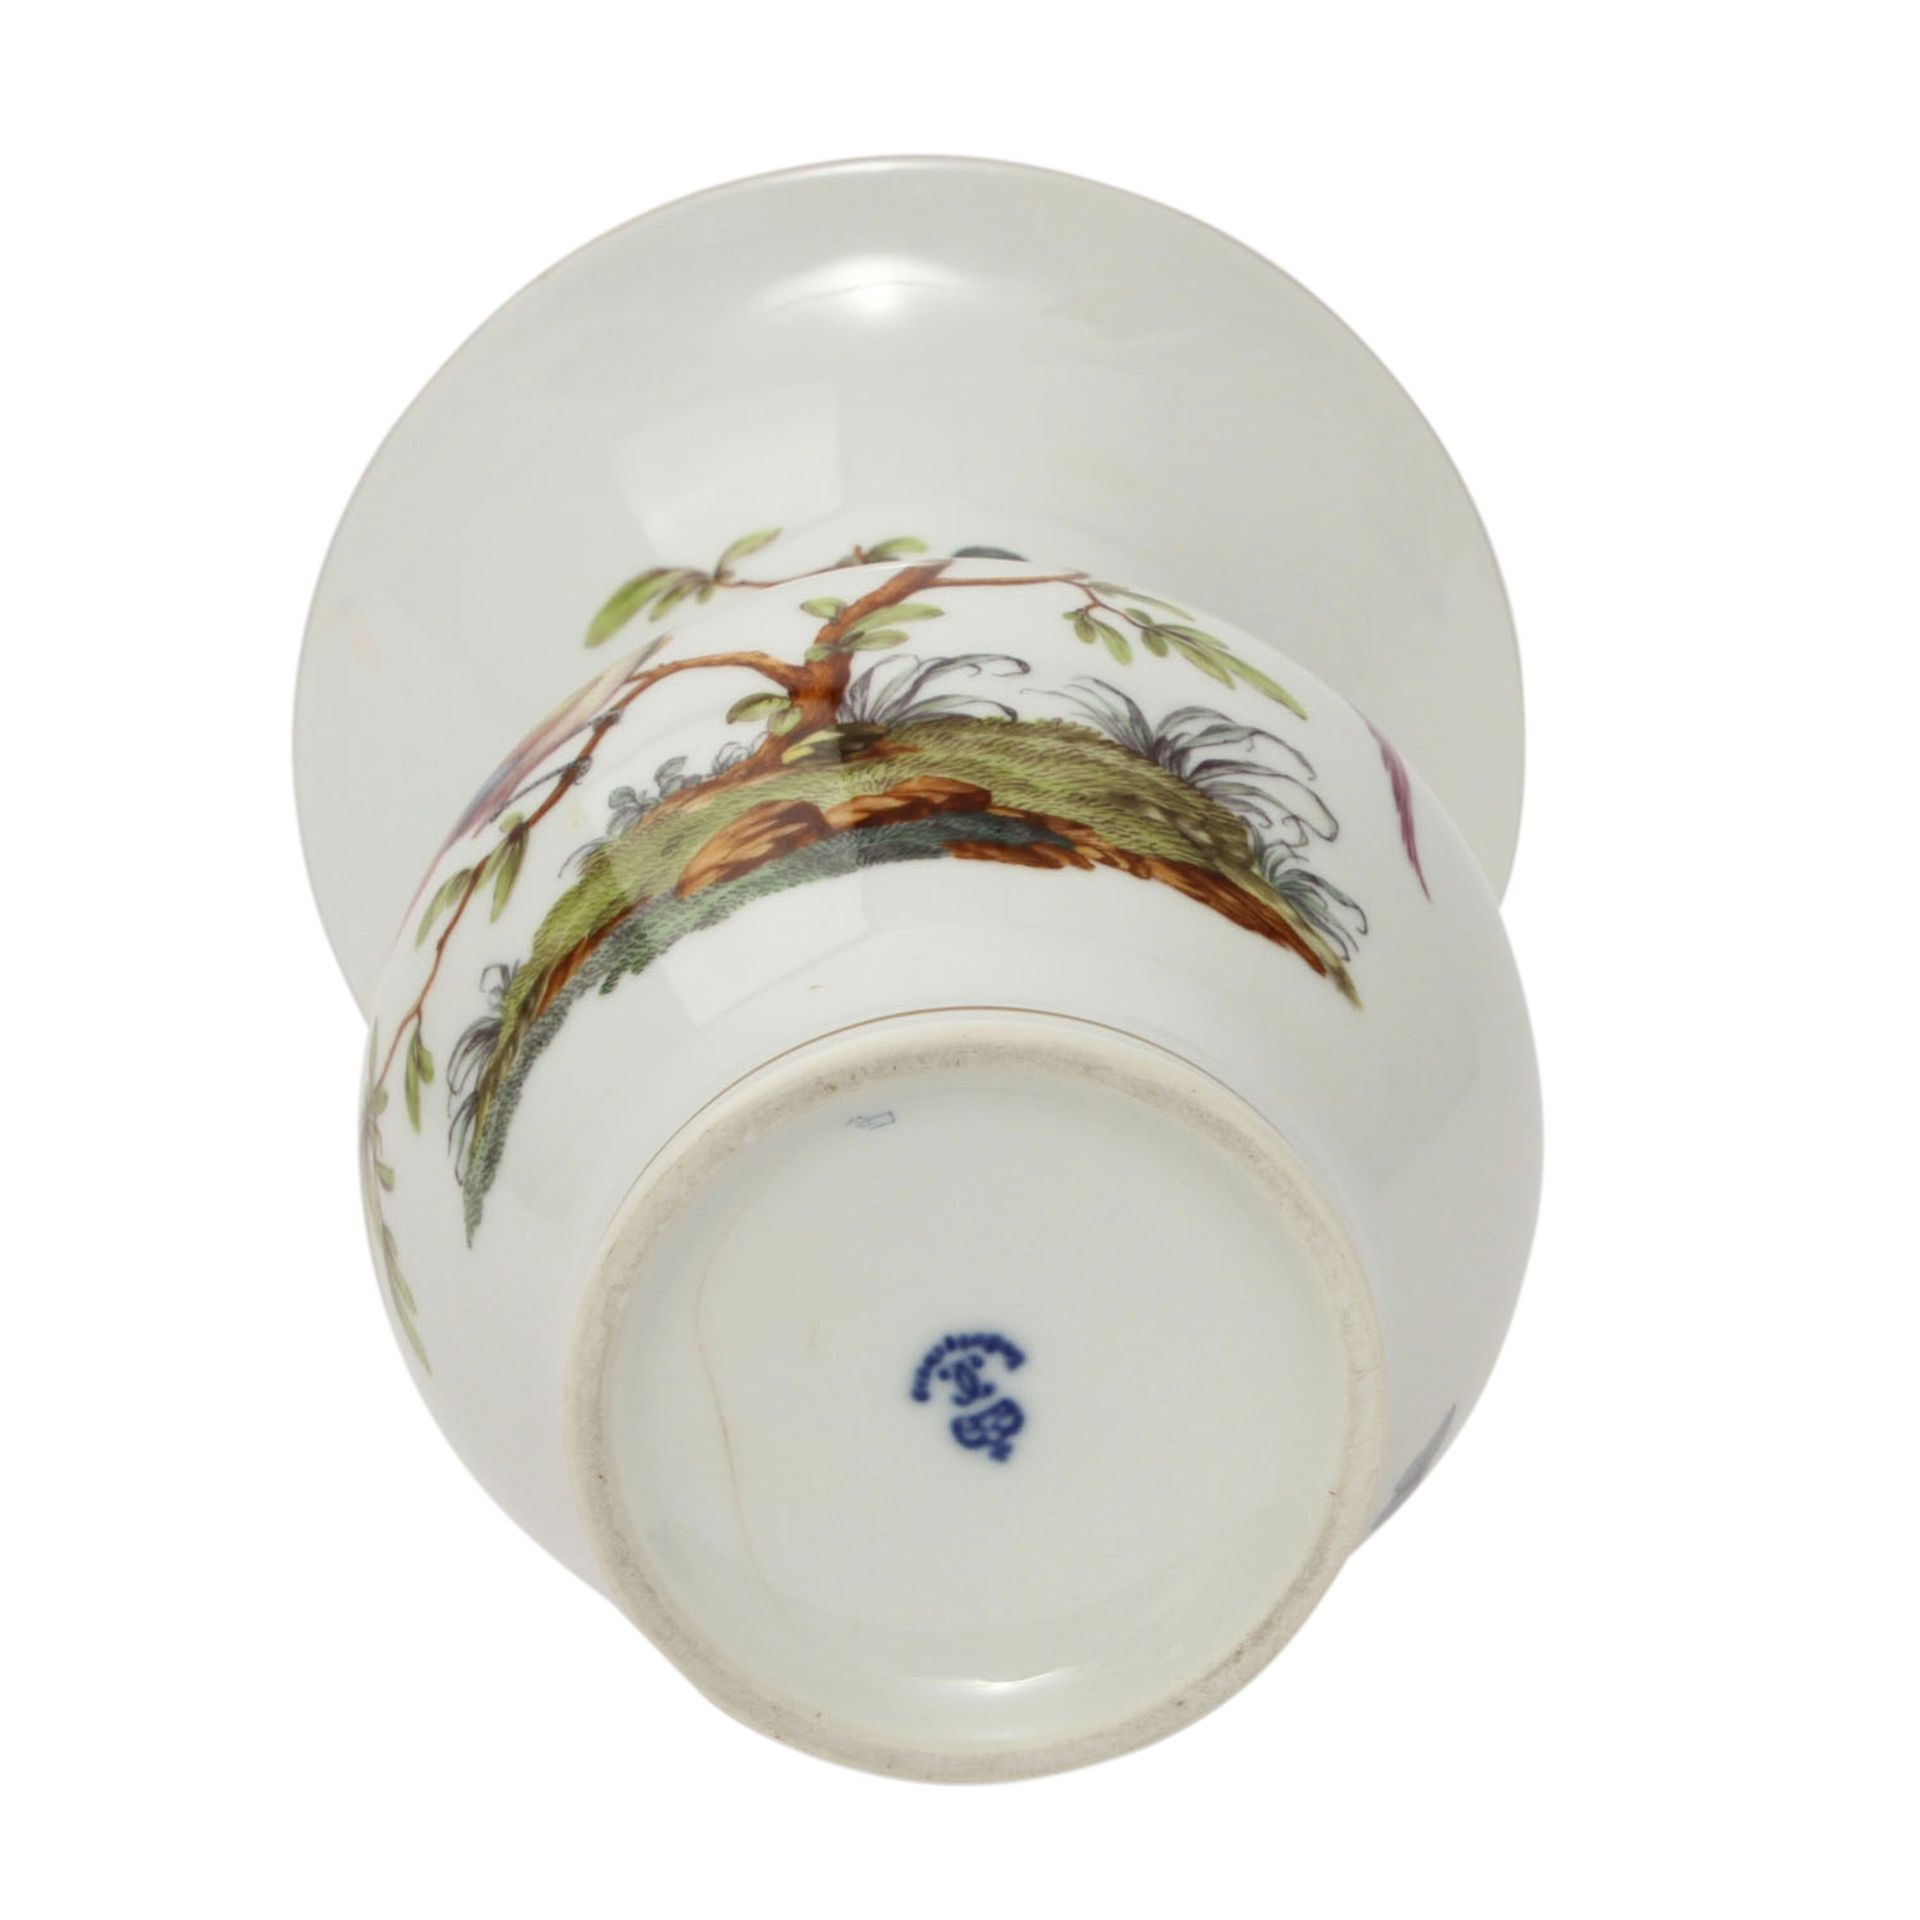 LUDWIGSBURG Vase, 20. Jhd.Weißporzellan mit feiner, polychromer Malerei von Vögeln und Insekten, - Image 5 of 6